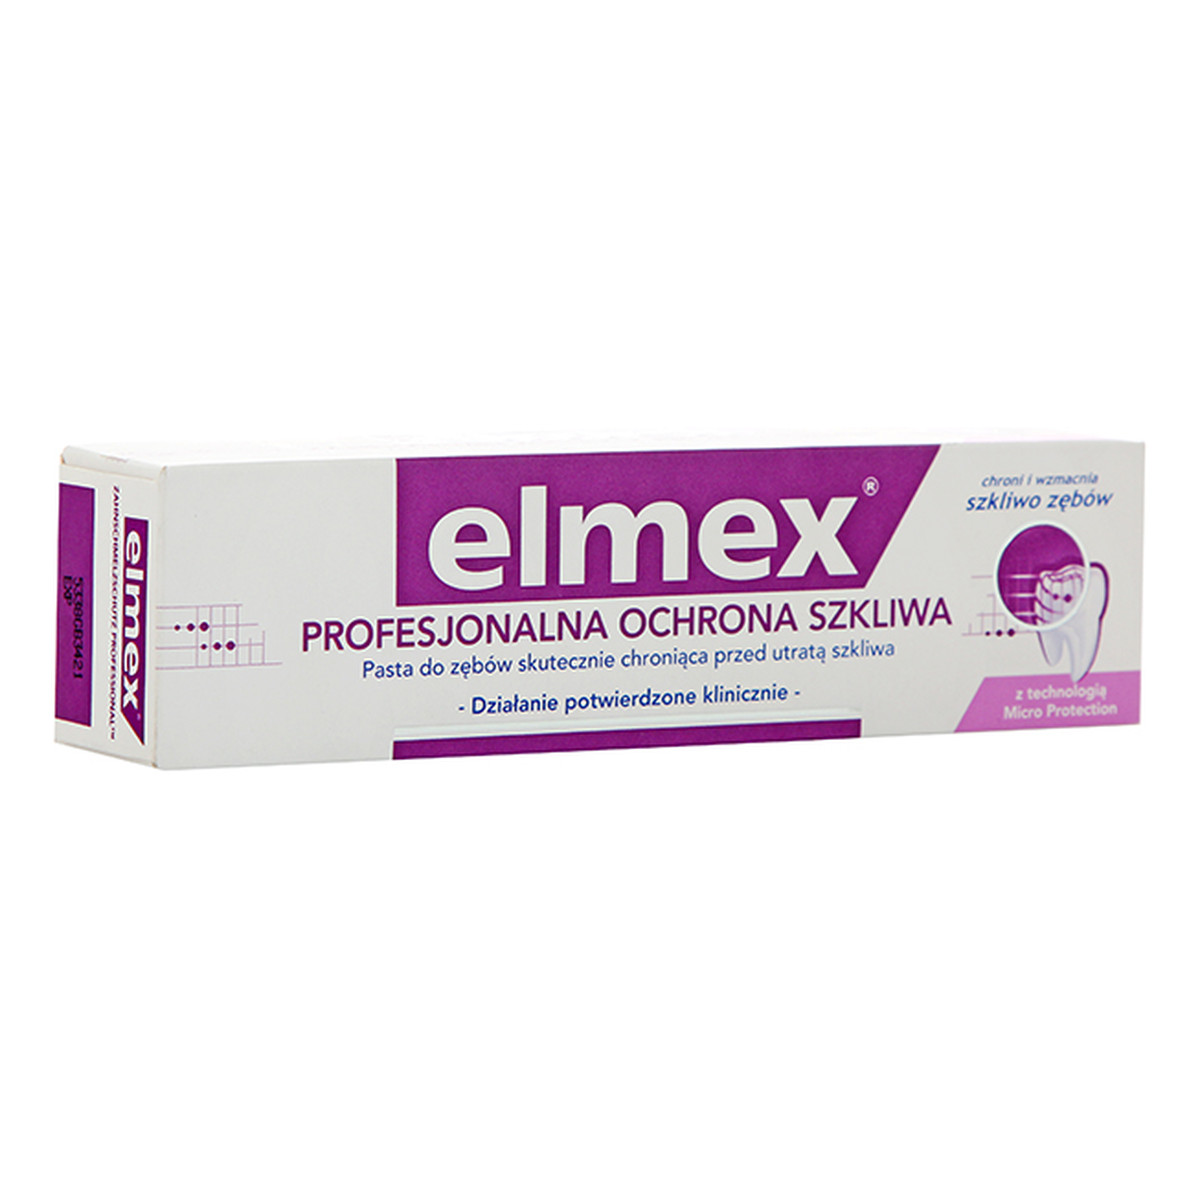 elmex Profesjonalna Ochrona Szkliwa Pasta Do Zębów 75ml